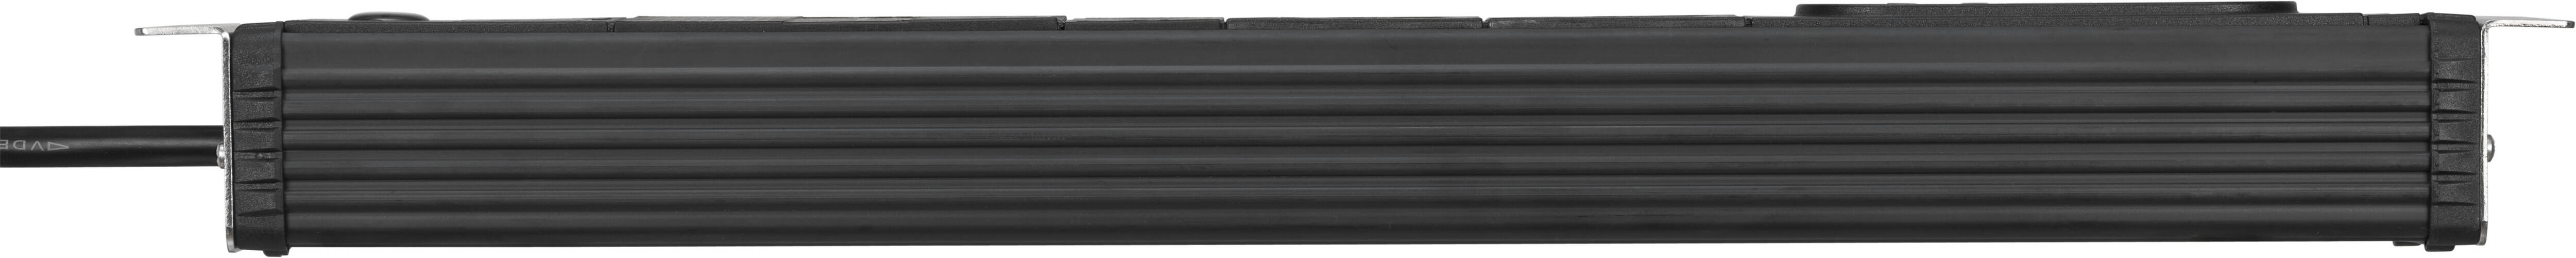 Hochwertige schwarze Brennenstuhl Steckdosenleiste der Premium Web Line V3 Serie mit 4 Steckdosen und einer Kabellänge von 3m H05VV-F3G1.5.